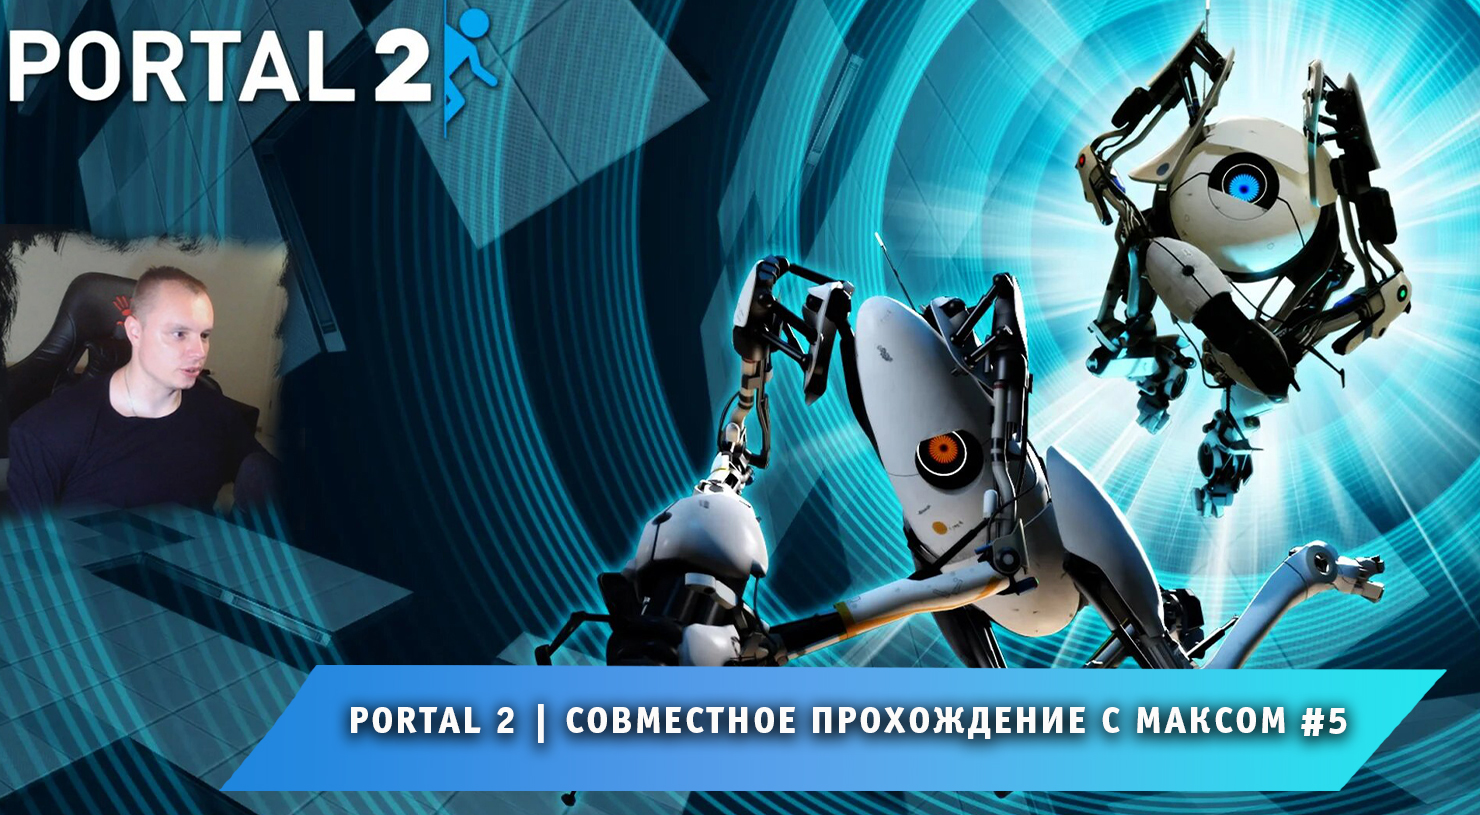 Portal 2 кооператив как пройти фото 2